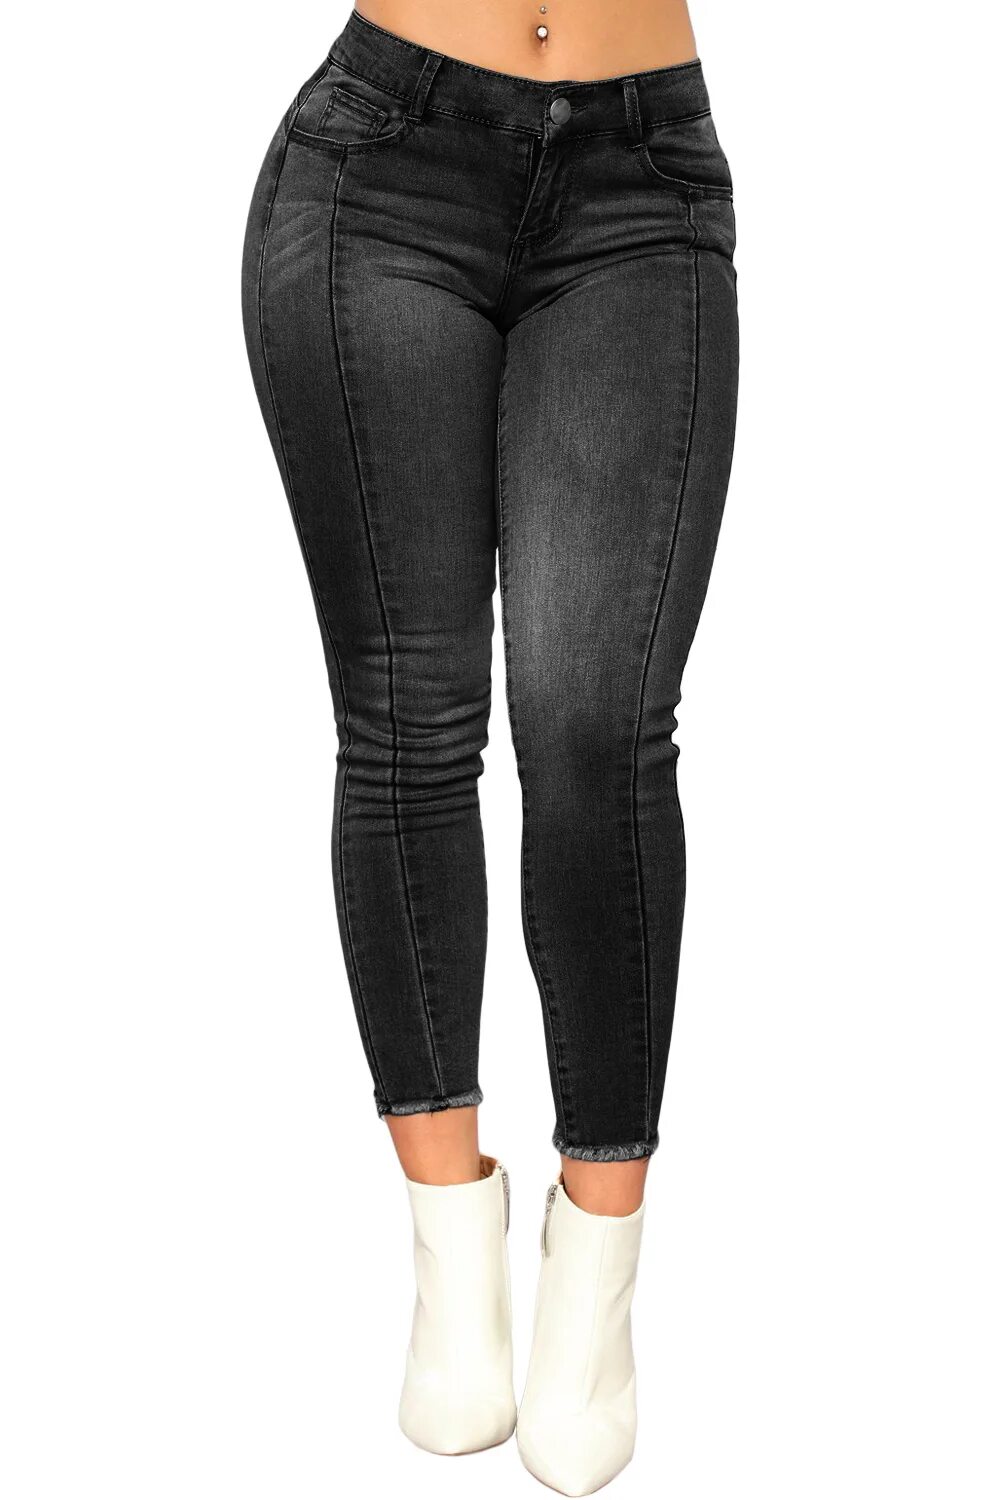 Черные брюки с белыми швами. Чёрные джинсы женские. Серые джинсы женские. Обтягивающие джинсы женские. Чёрные обтягивающие джинсы.